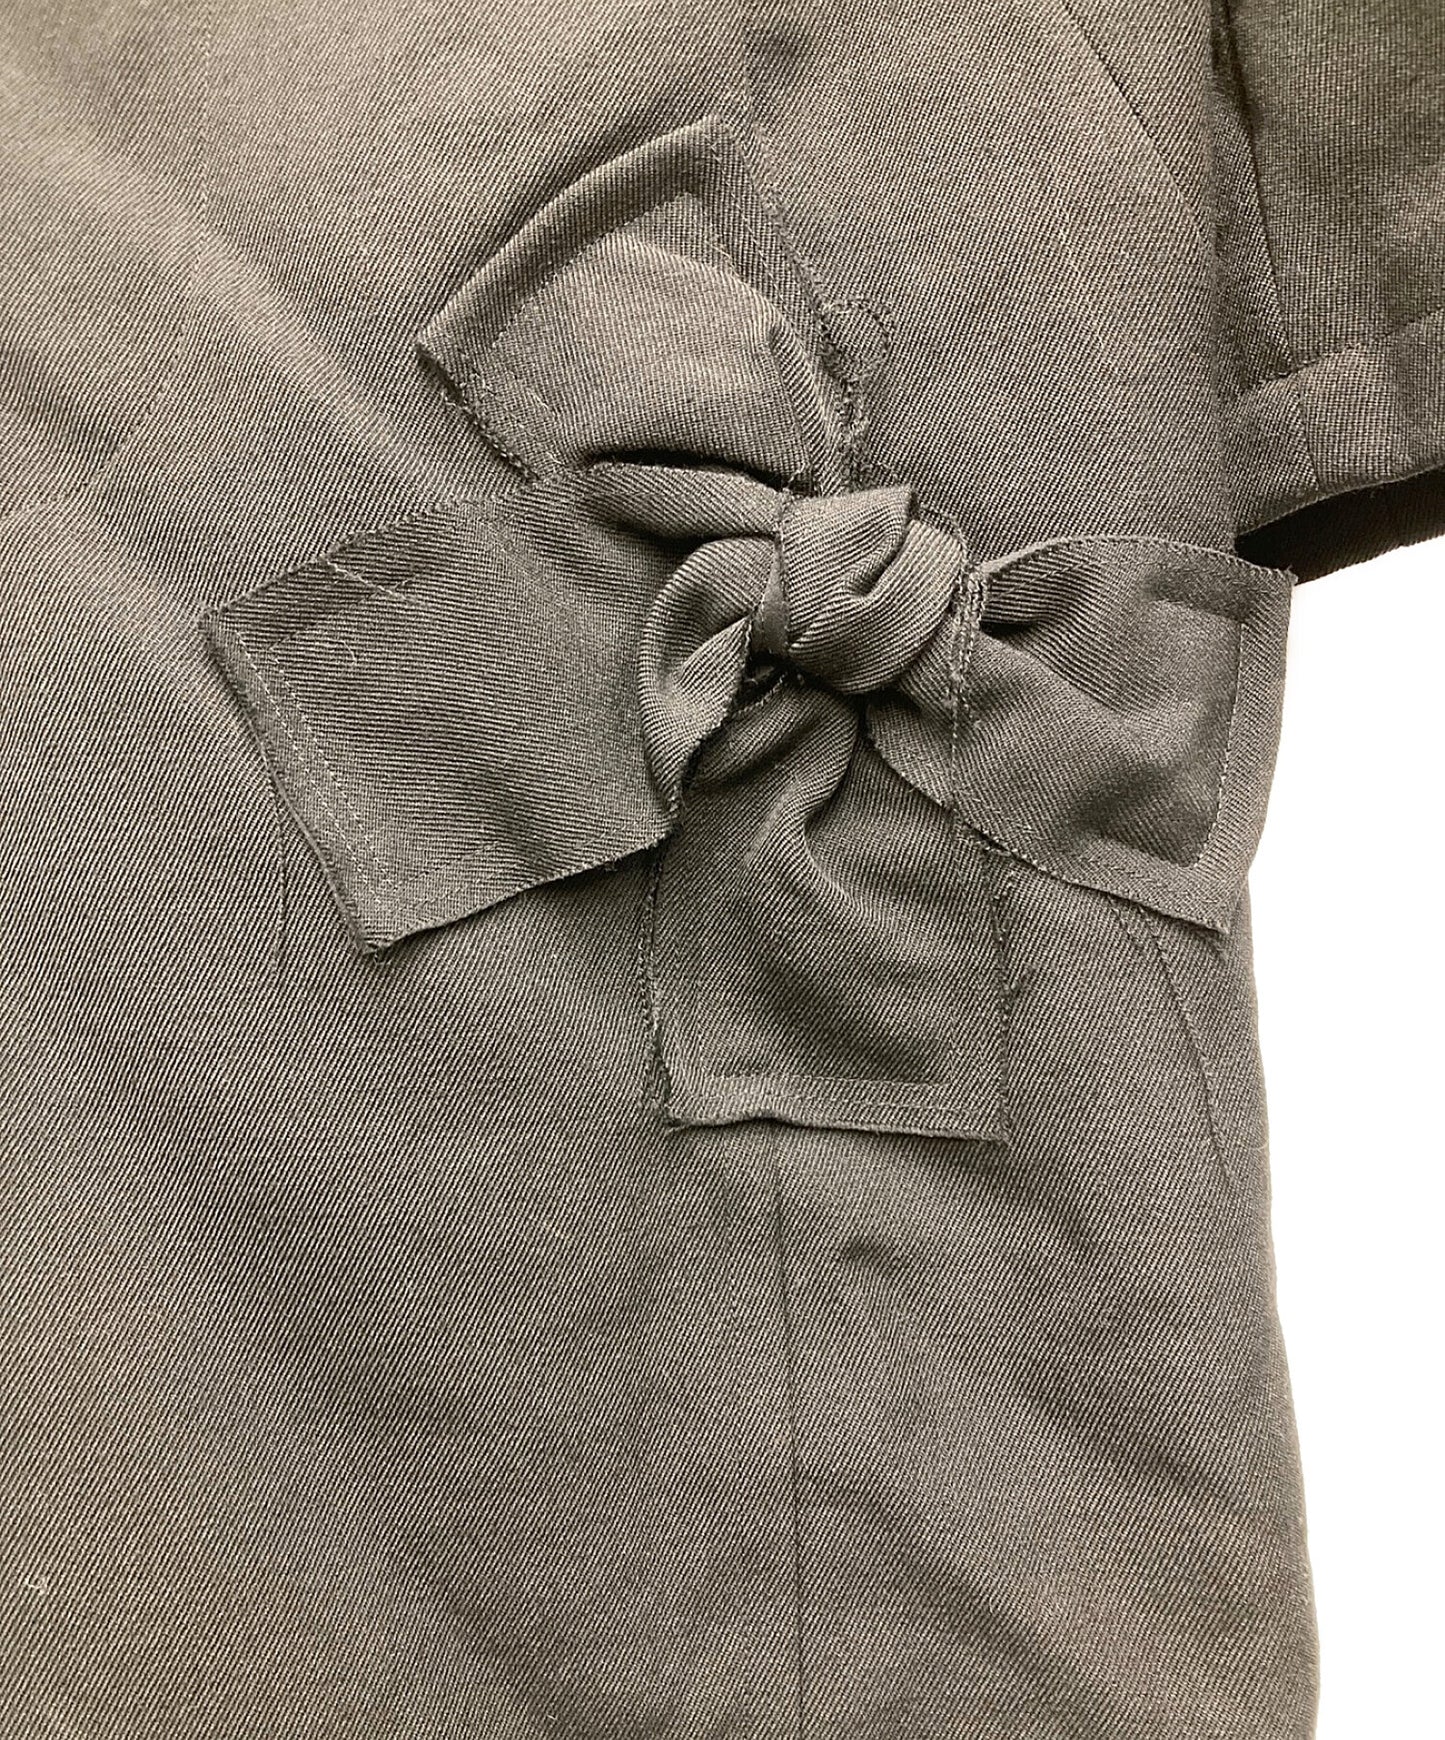 Robe de chambre comme des garcons用緞帶裝飾不銹鋼衣領外套AD2003 RK-C005